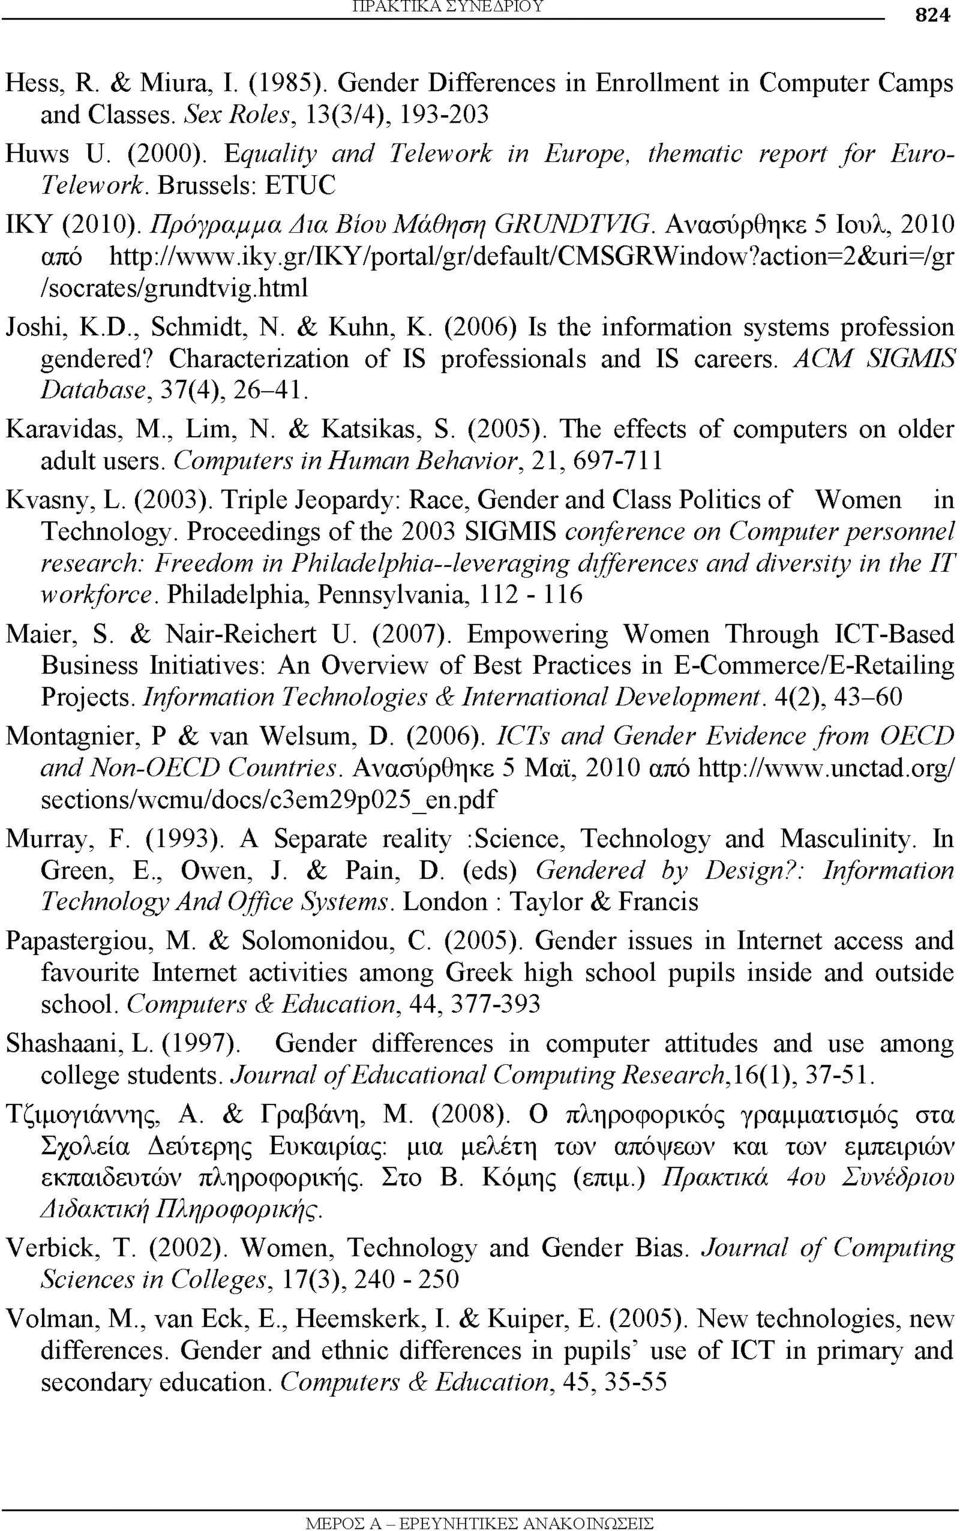 gr/iky/portal/gr/default/cmsgrwindow?action=2&uri=/gr /socrates/grundtvig.html Joshi, K.D., Schmidt, N. & Kuhn, K. (2006) Is the information systems profession gendered?